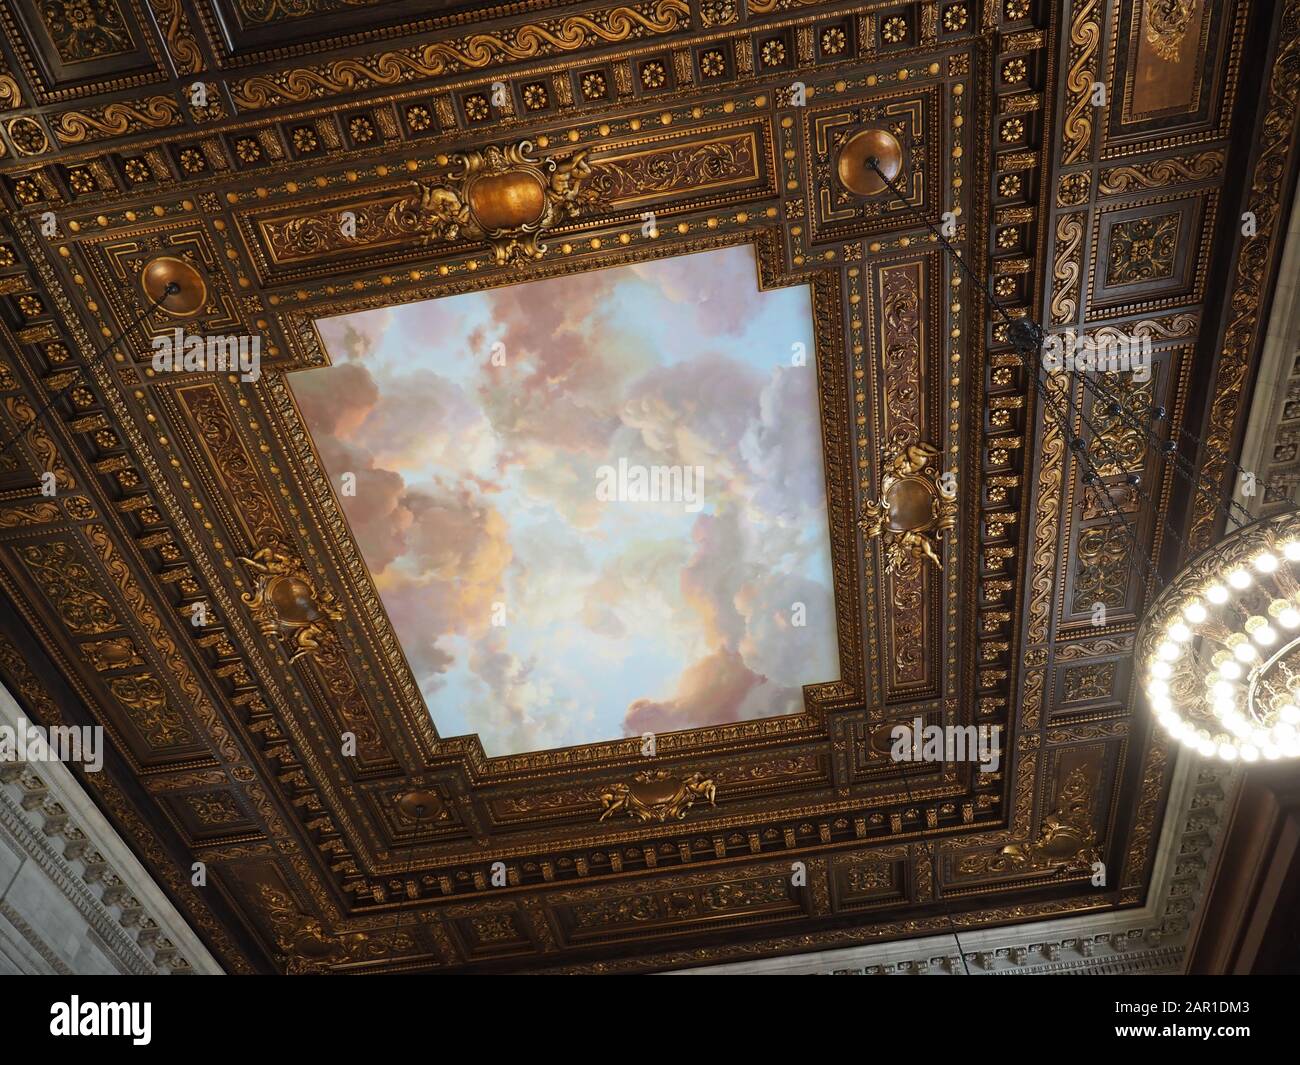 New York, Stati Uniti d'America - 30 maggio 2019: Immagine dei soffitti belli trovati nella Biblioteca pubblica di New York. Foto Stock